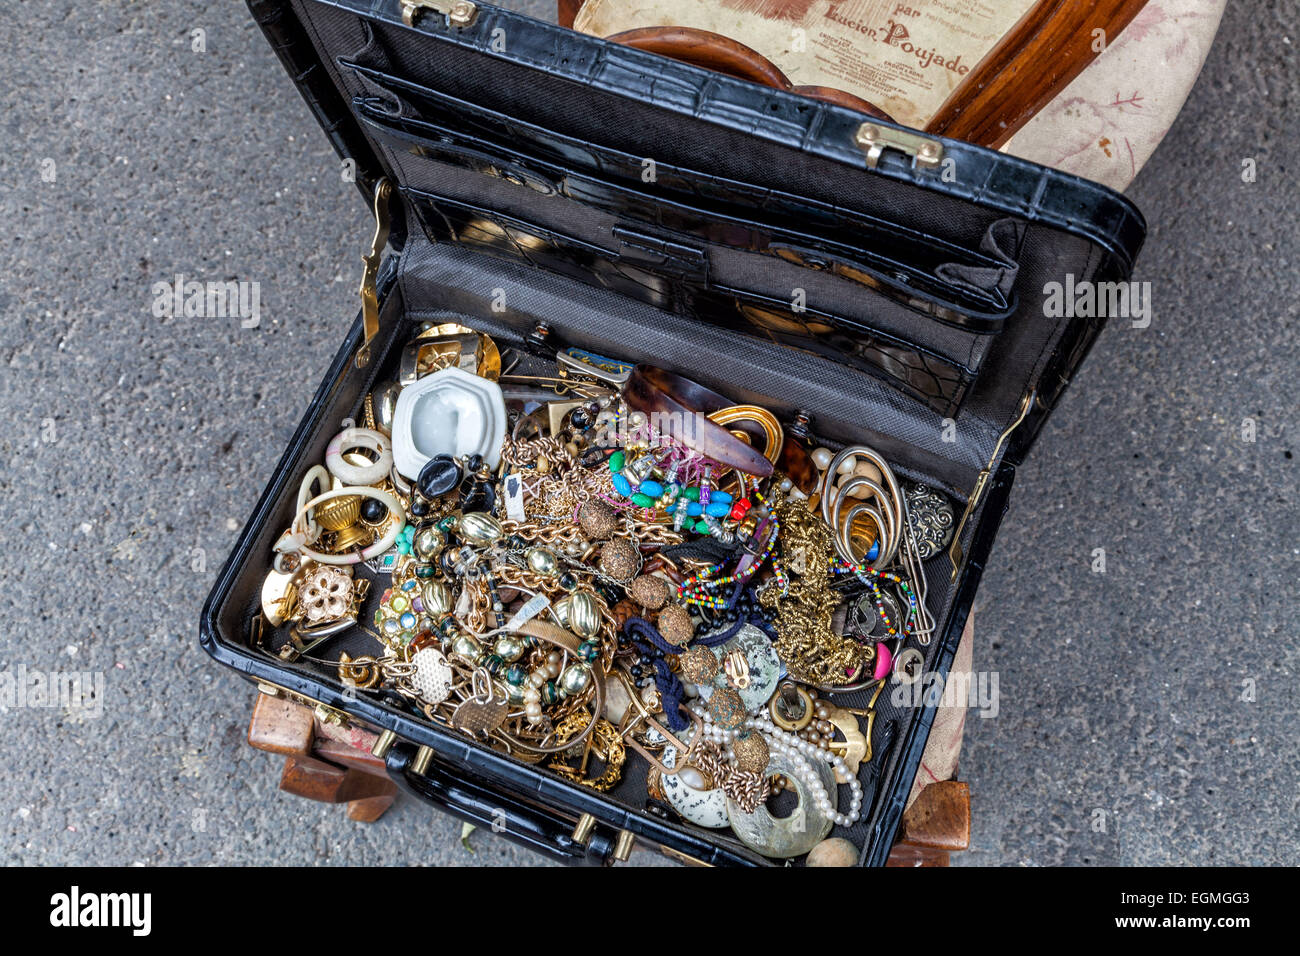 Une valise pleine de trésors ! Bijoux indésirable remplit une valise à la rue du marché. Banque D'Images